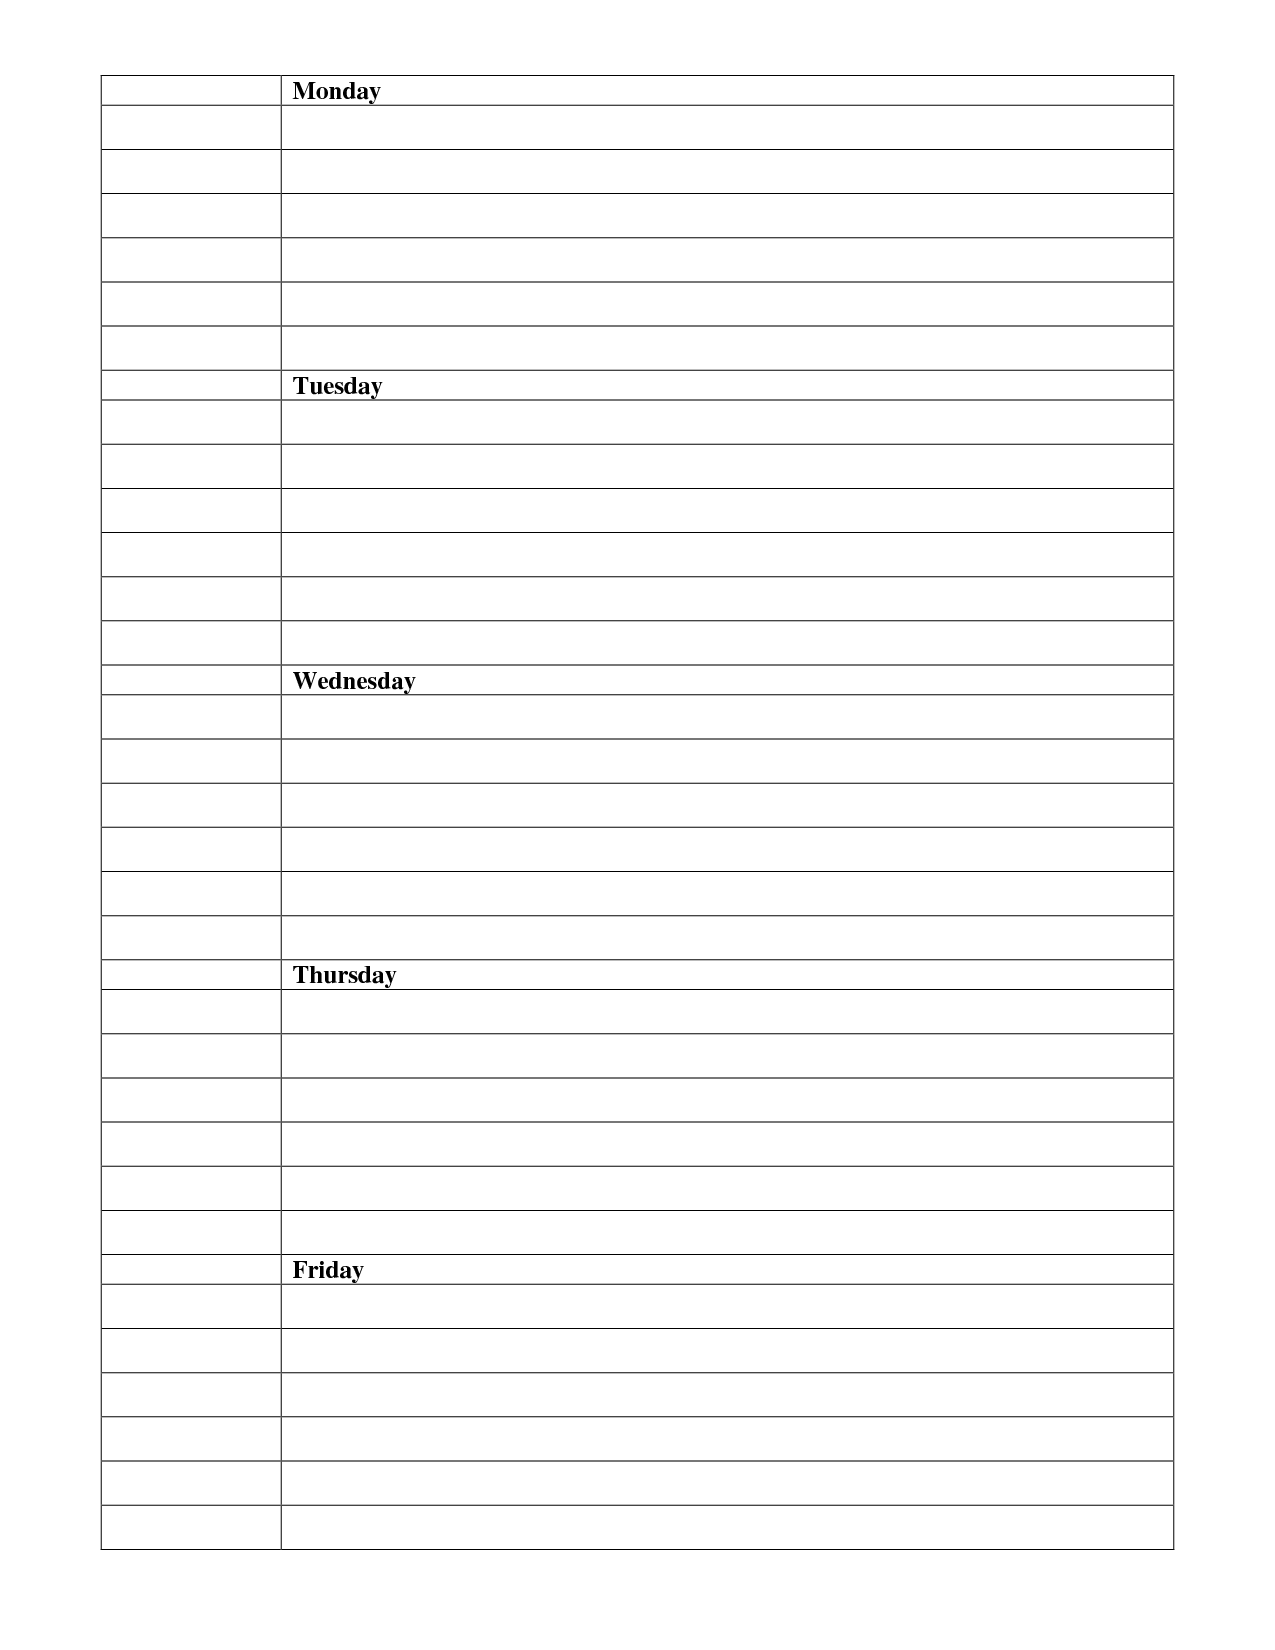 Blank Homework Assignment Sheet Template Image